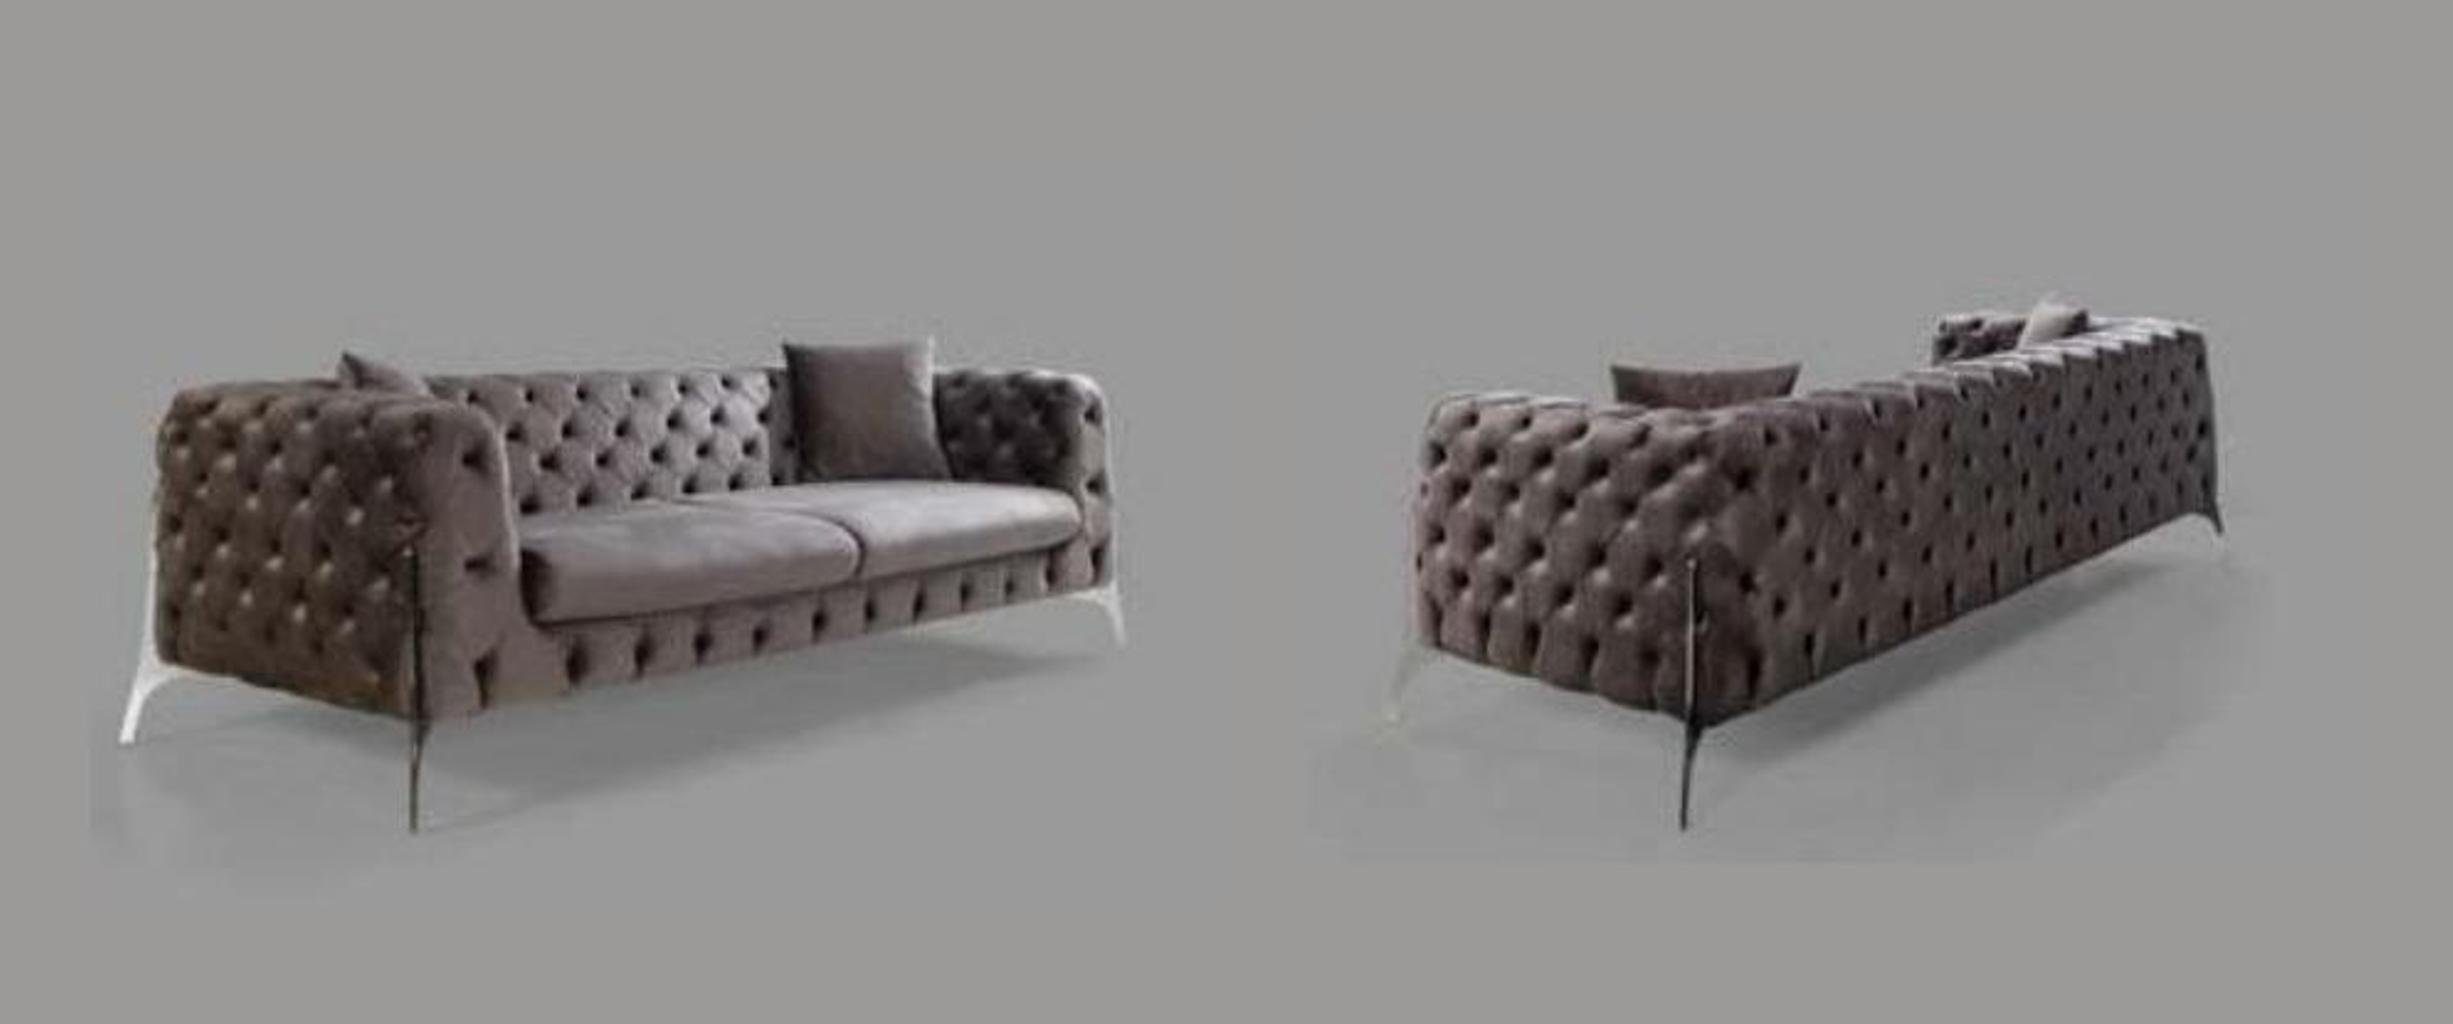 JVmoebel Dreisitzer Europe in Chesterfield-Sofa Moderne 3-Sitzer Couch Chesterfield Neu, Grauer Made Luxus